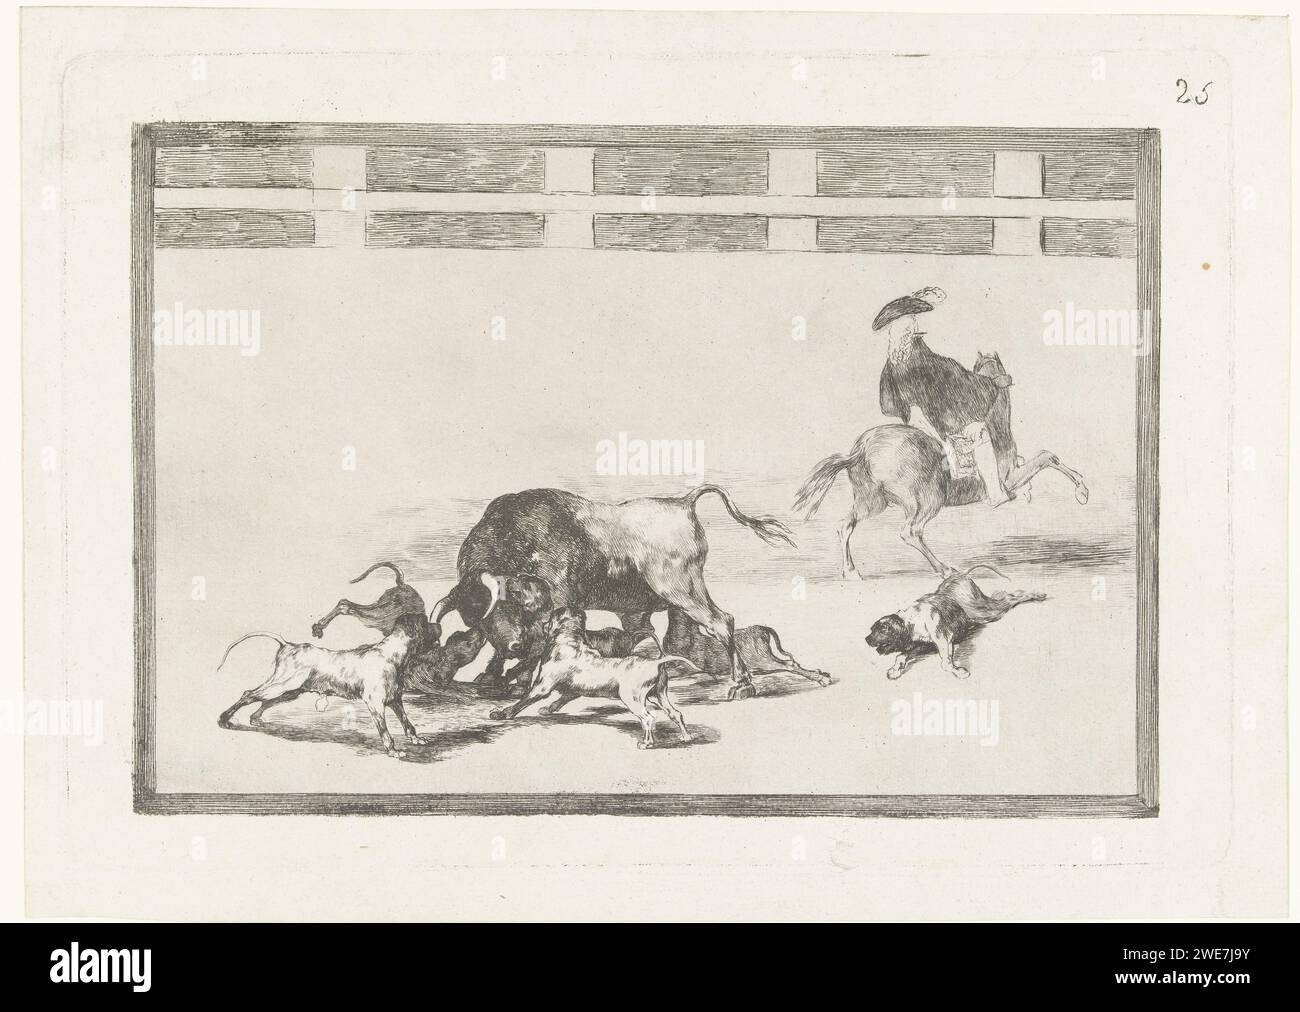 Taureau attaqué par des chiens, Francisco de Goya, 1811 - 1816 imprimer cinq chiens attaquent un taureau dans une arène. Un chien est blessé par terre. A droite un homme à cheval, vu au dos. Espagne gravure sur papier / corrida à pointe sèche Banque D'Images